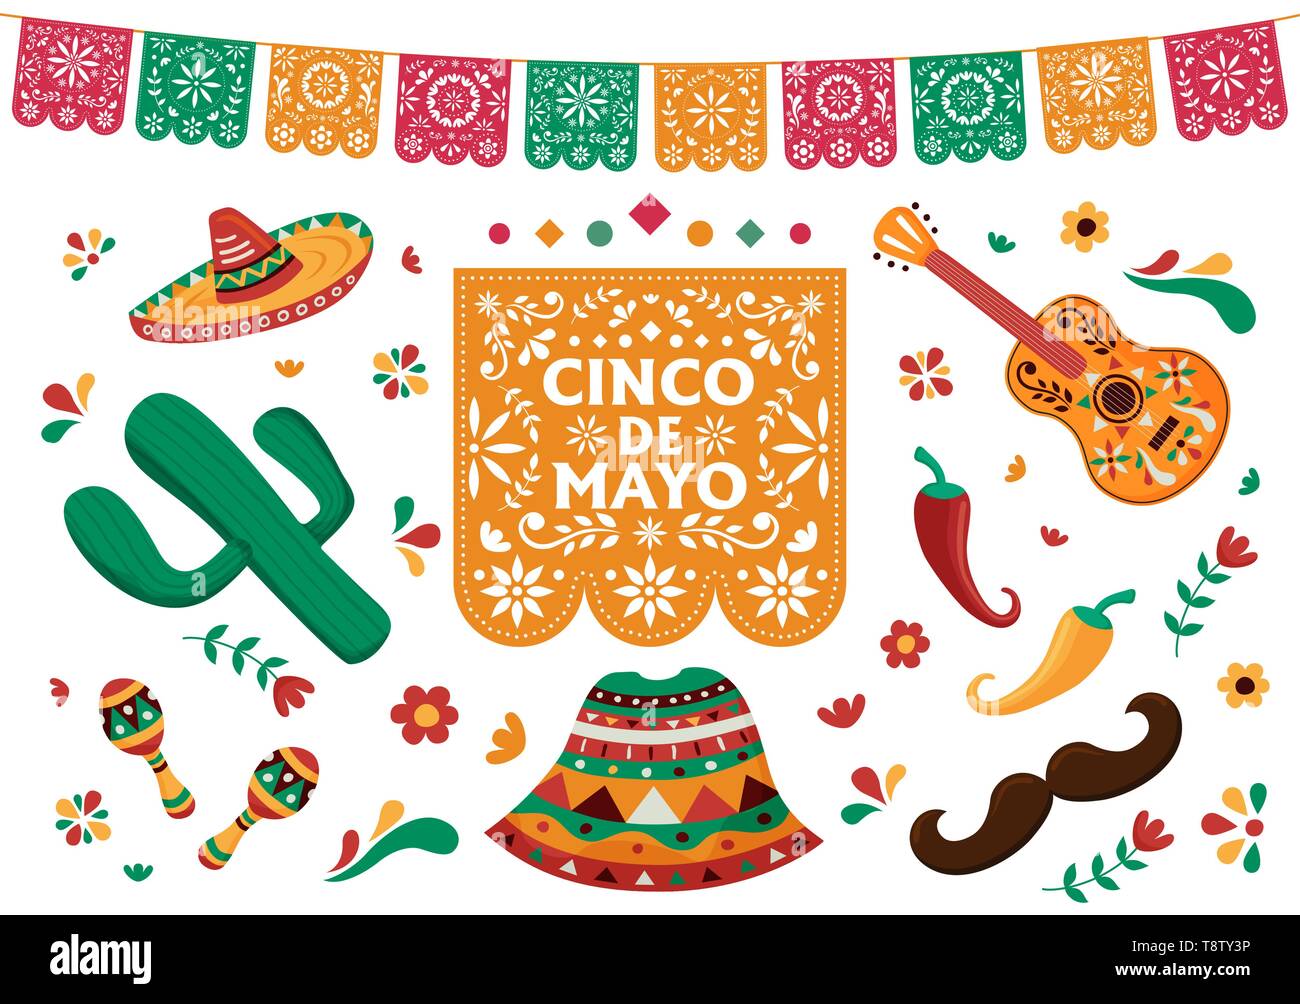 Le Cinco de Mayo mexicain pour fête de l'indépendance. Le Mexique traditionnel décoration culture collection. Comprend guitare, maracas, mariachi hat, cact Illustration de Vecteur